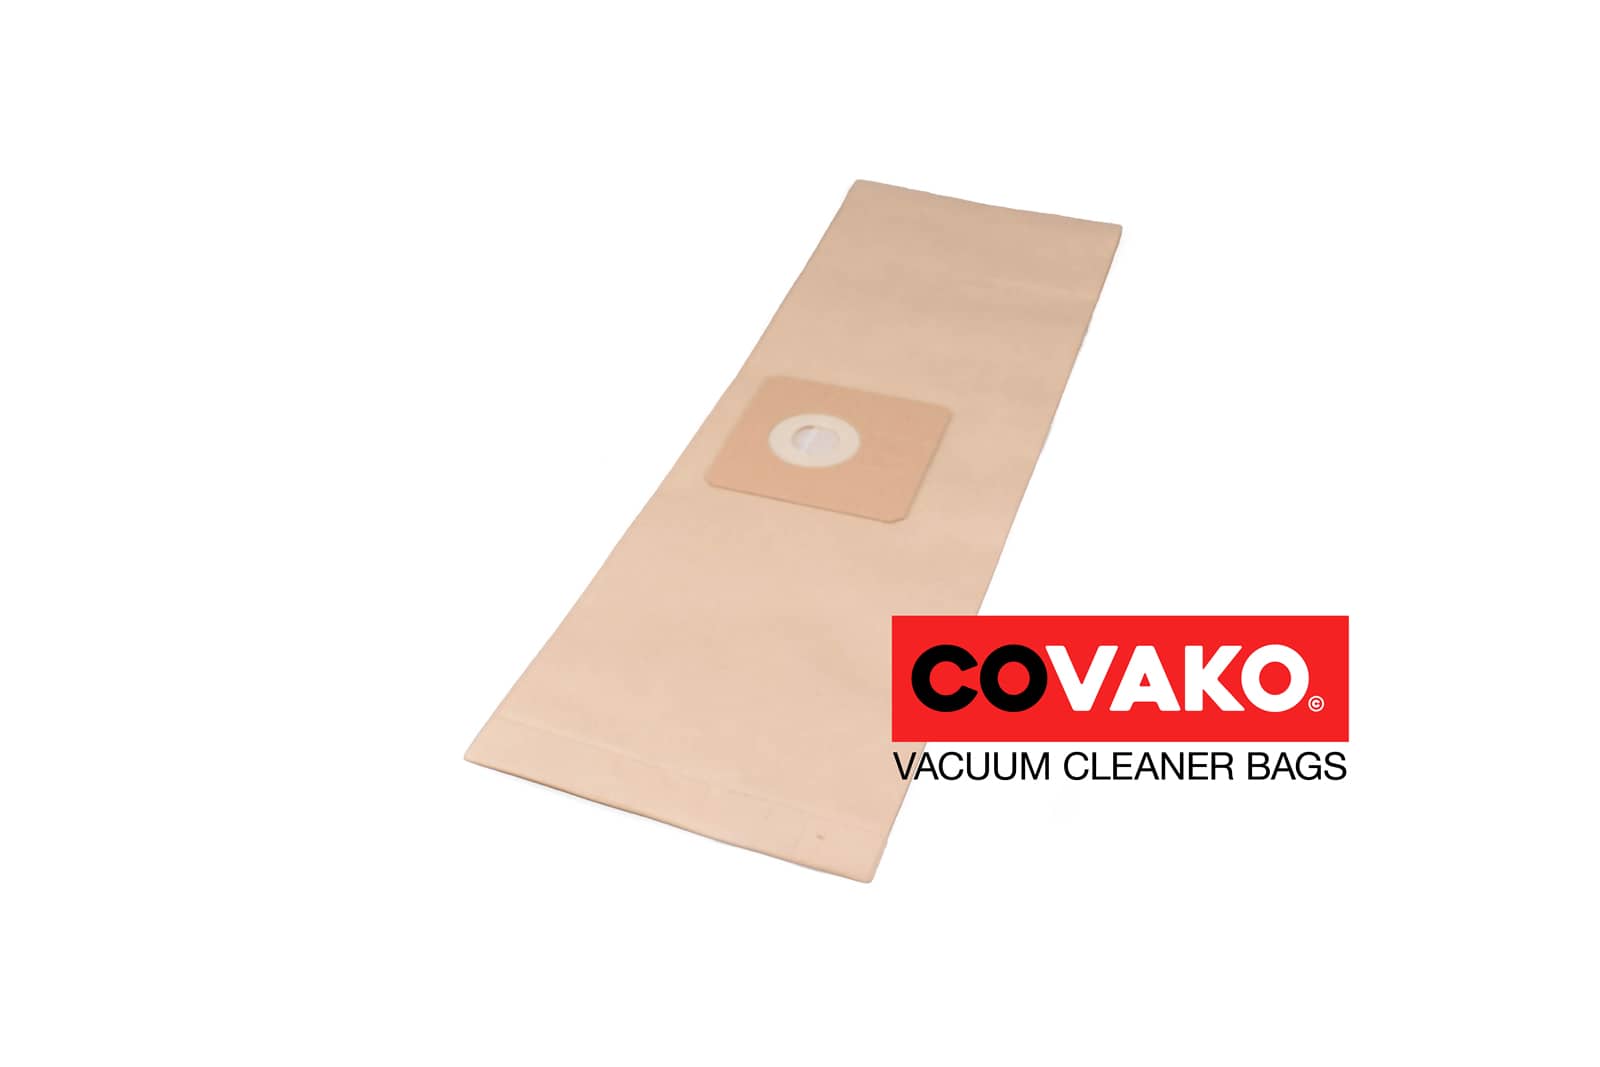 TMB Piccolo Pro / Paper - TMB vacuum cleaner bags